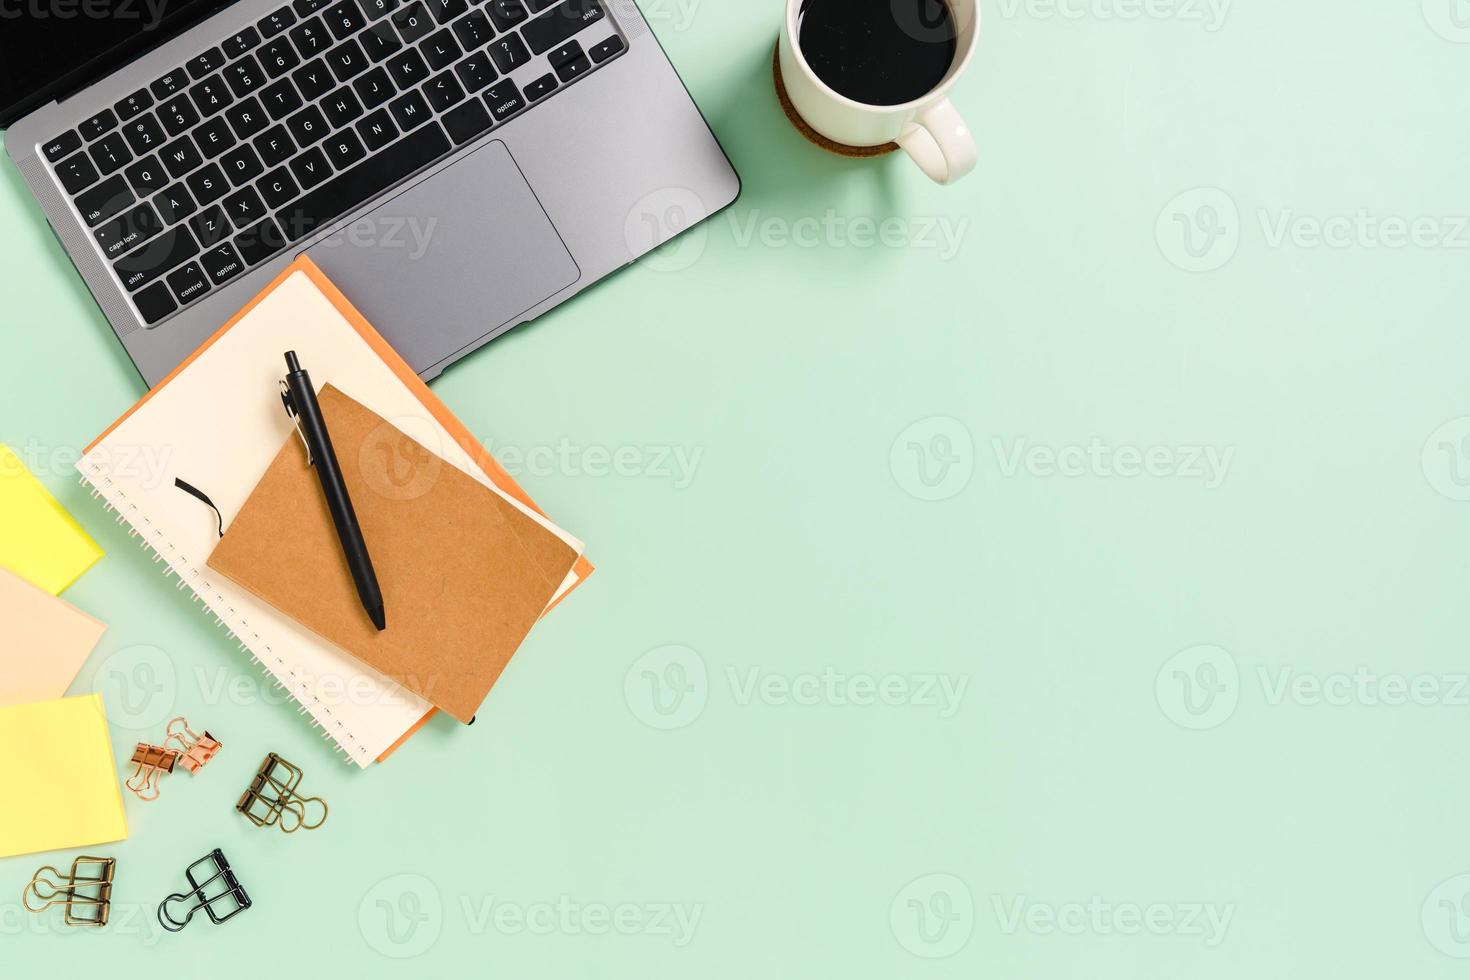 minimaler arbeitsplatz - kreatives flaches foto des arbeitsplatzes. Schreibtisch von oben mit Laptop, Kaffeetasse und Notizbuch auf pastellgrünem Hintergrund. Draufsicht mit Kopienraumfotografie.